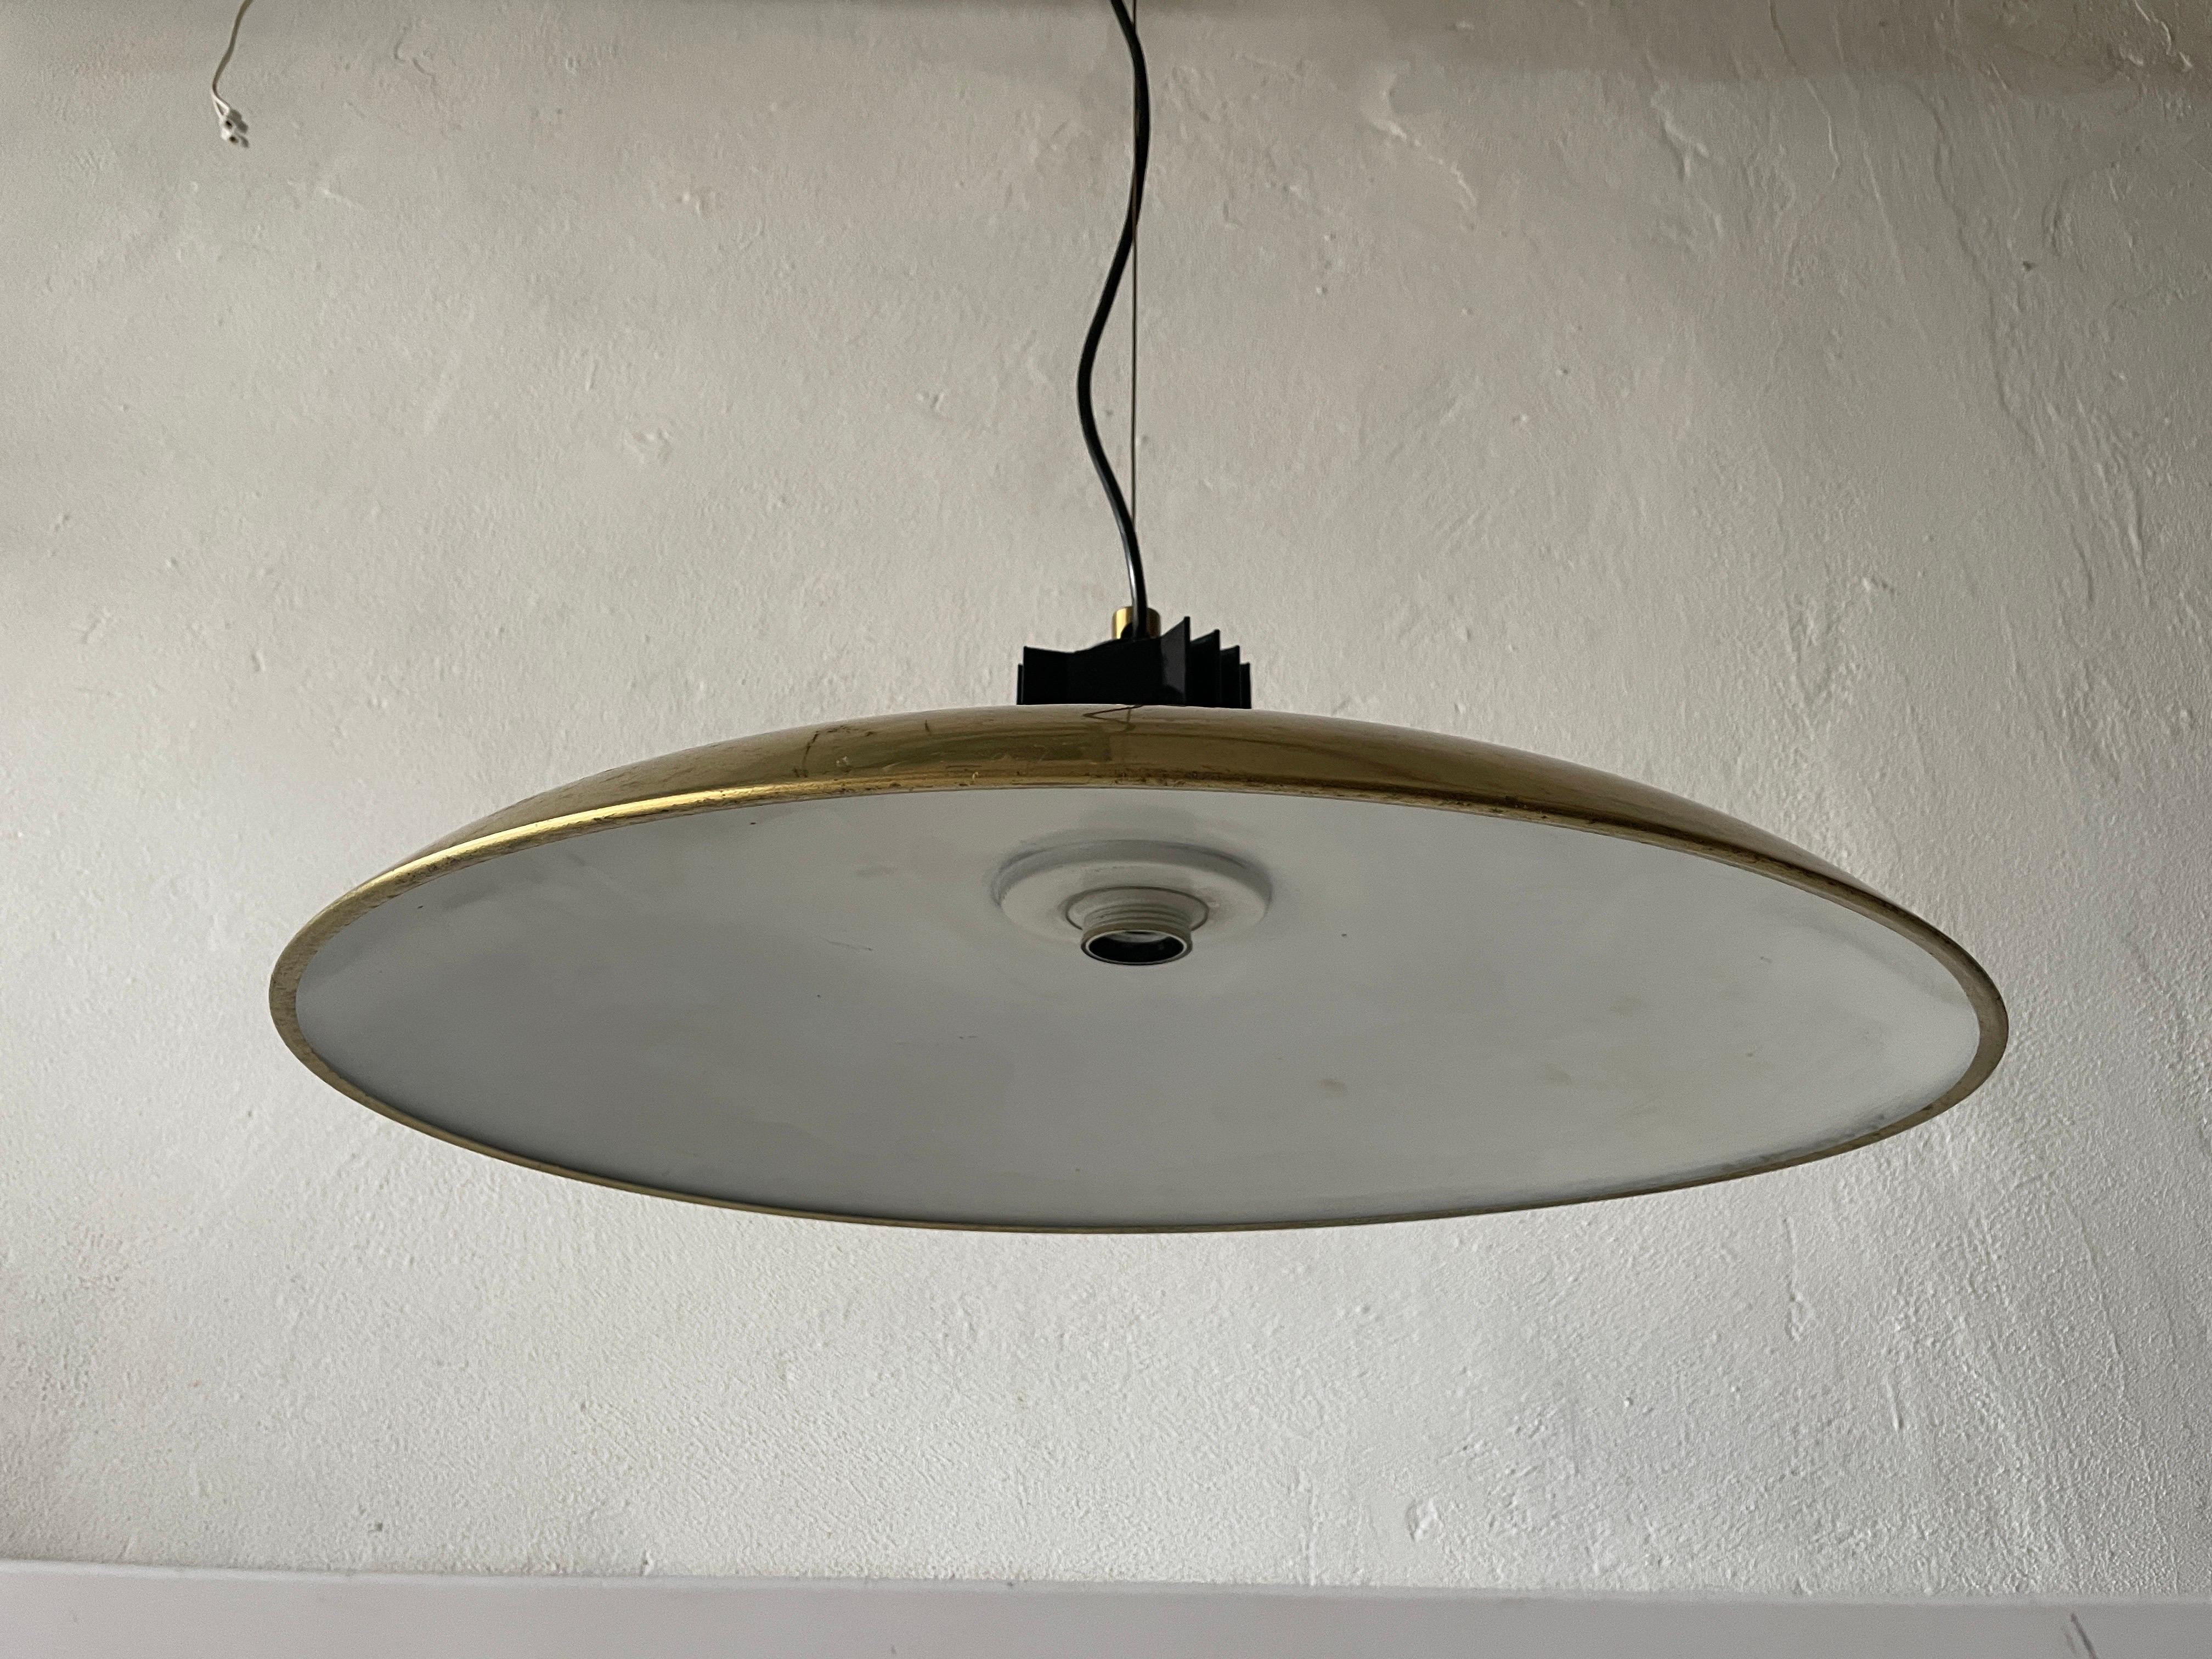 Mid Century Modern Messing Italienische XL Pendelleuchte, 1960er Jahre, Italien

Diese Lampe funktioniert mit einer E27-Glühbirne.

Abmessungen: 
Höhe: 110 cm
Durchmesser und Höhe des Lampenschirms: 56 und 20 cm

